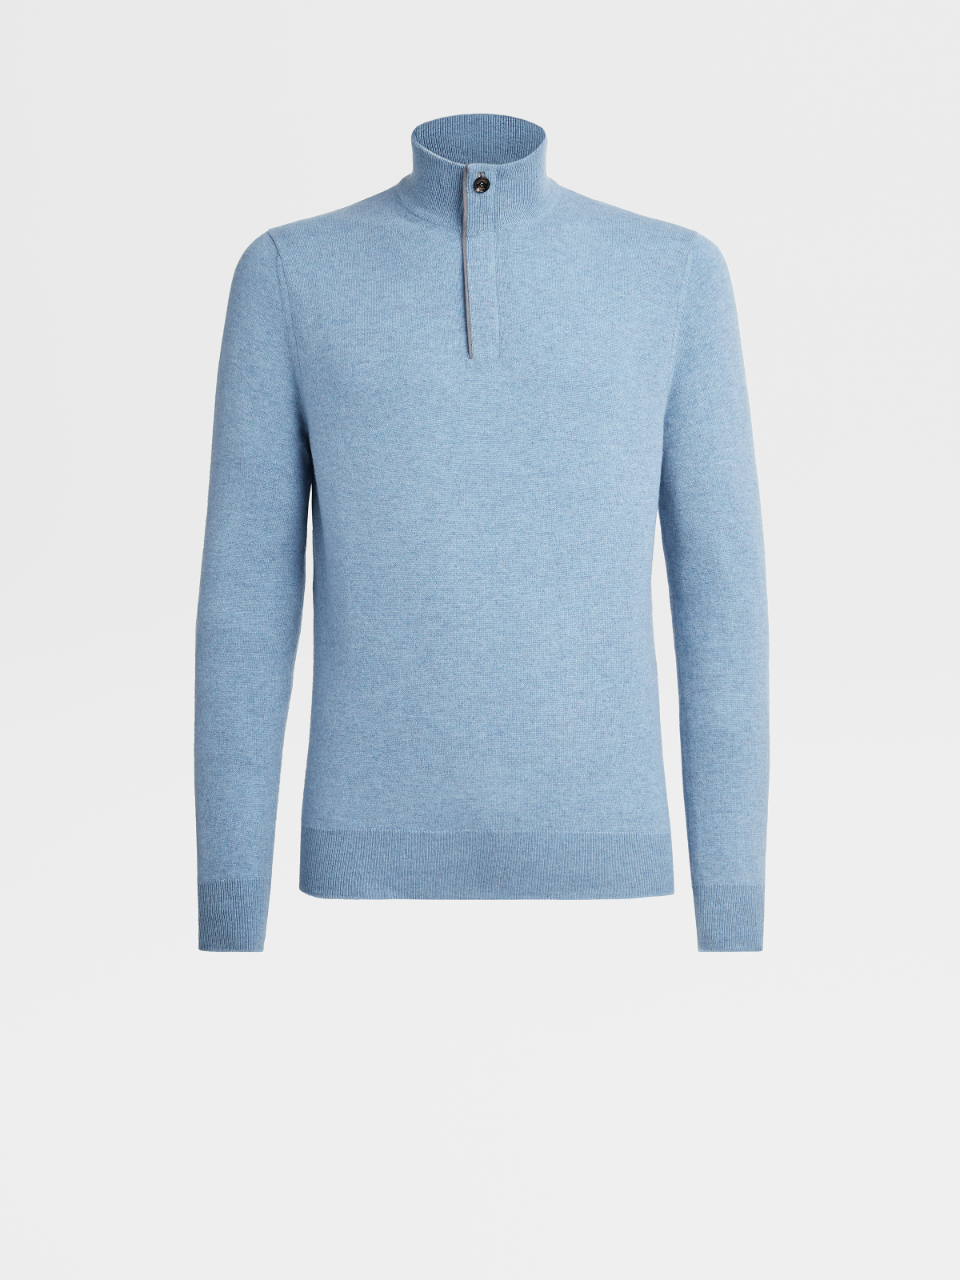 Jersey de Cuello de Chimenea en Punto de Premium Cashmere de color Azul Claro